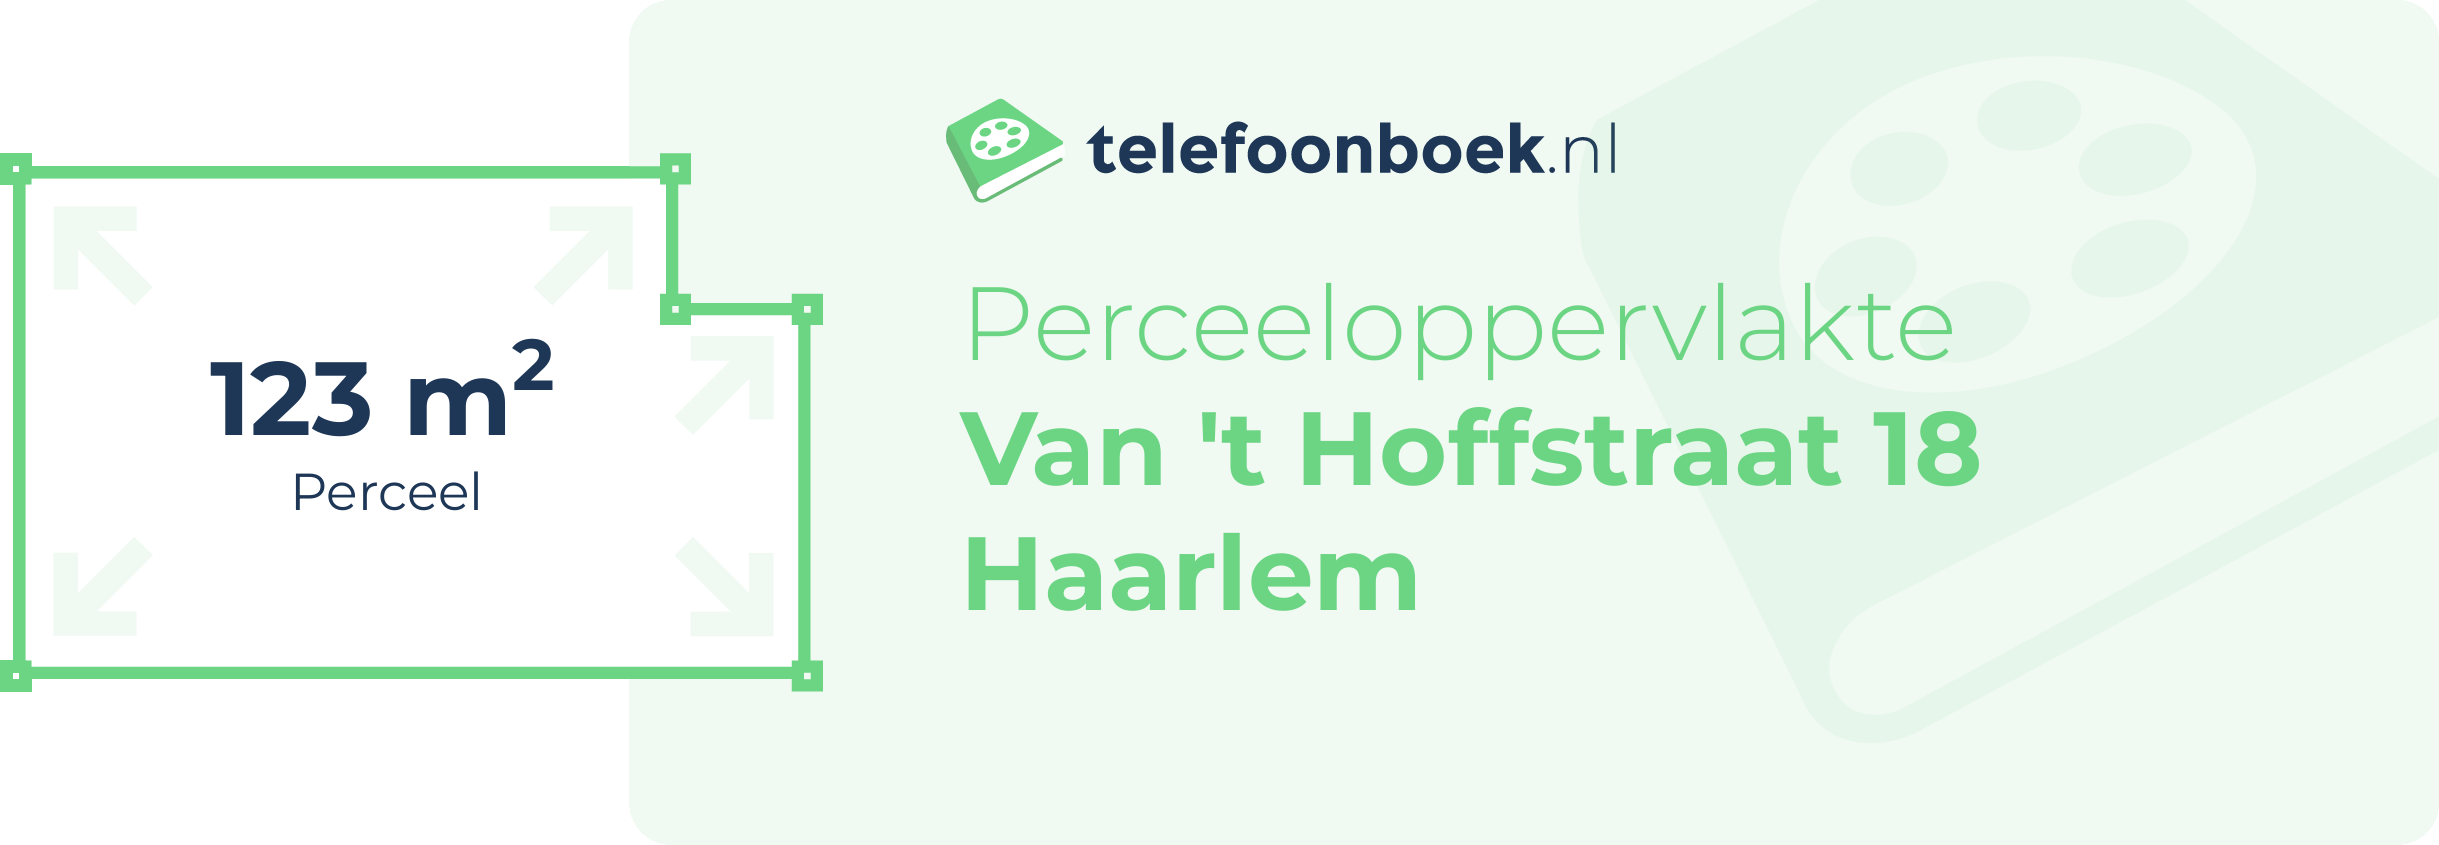 Perceeloppervlakte Van 't Hoffstraat 18 Haarlem